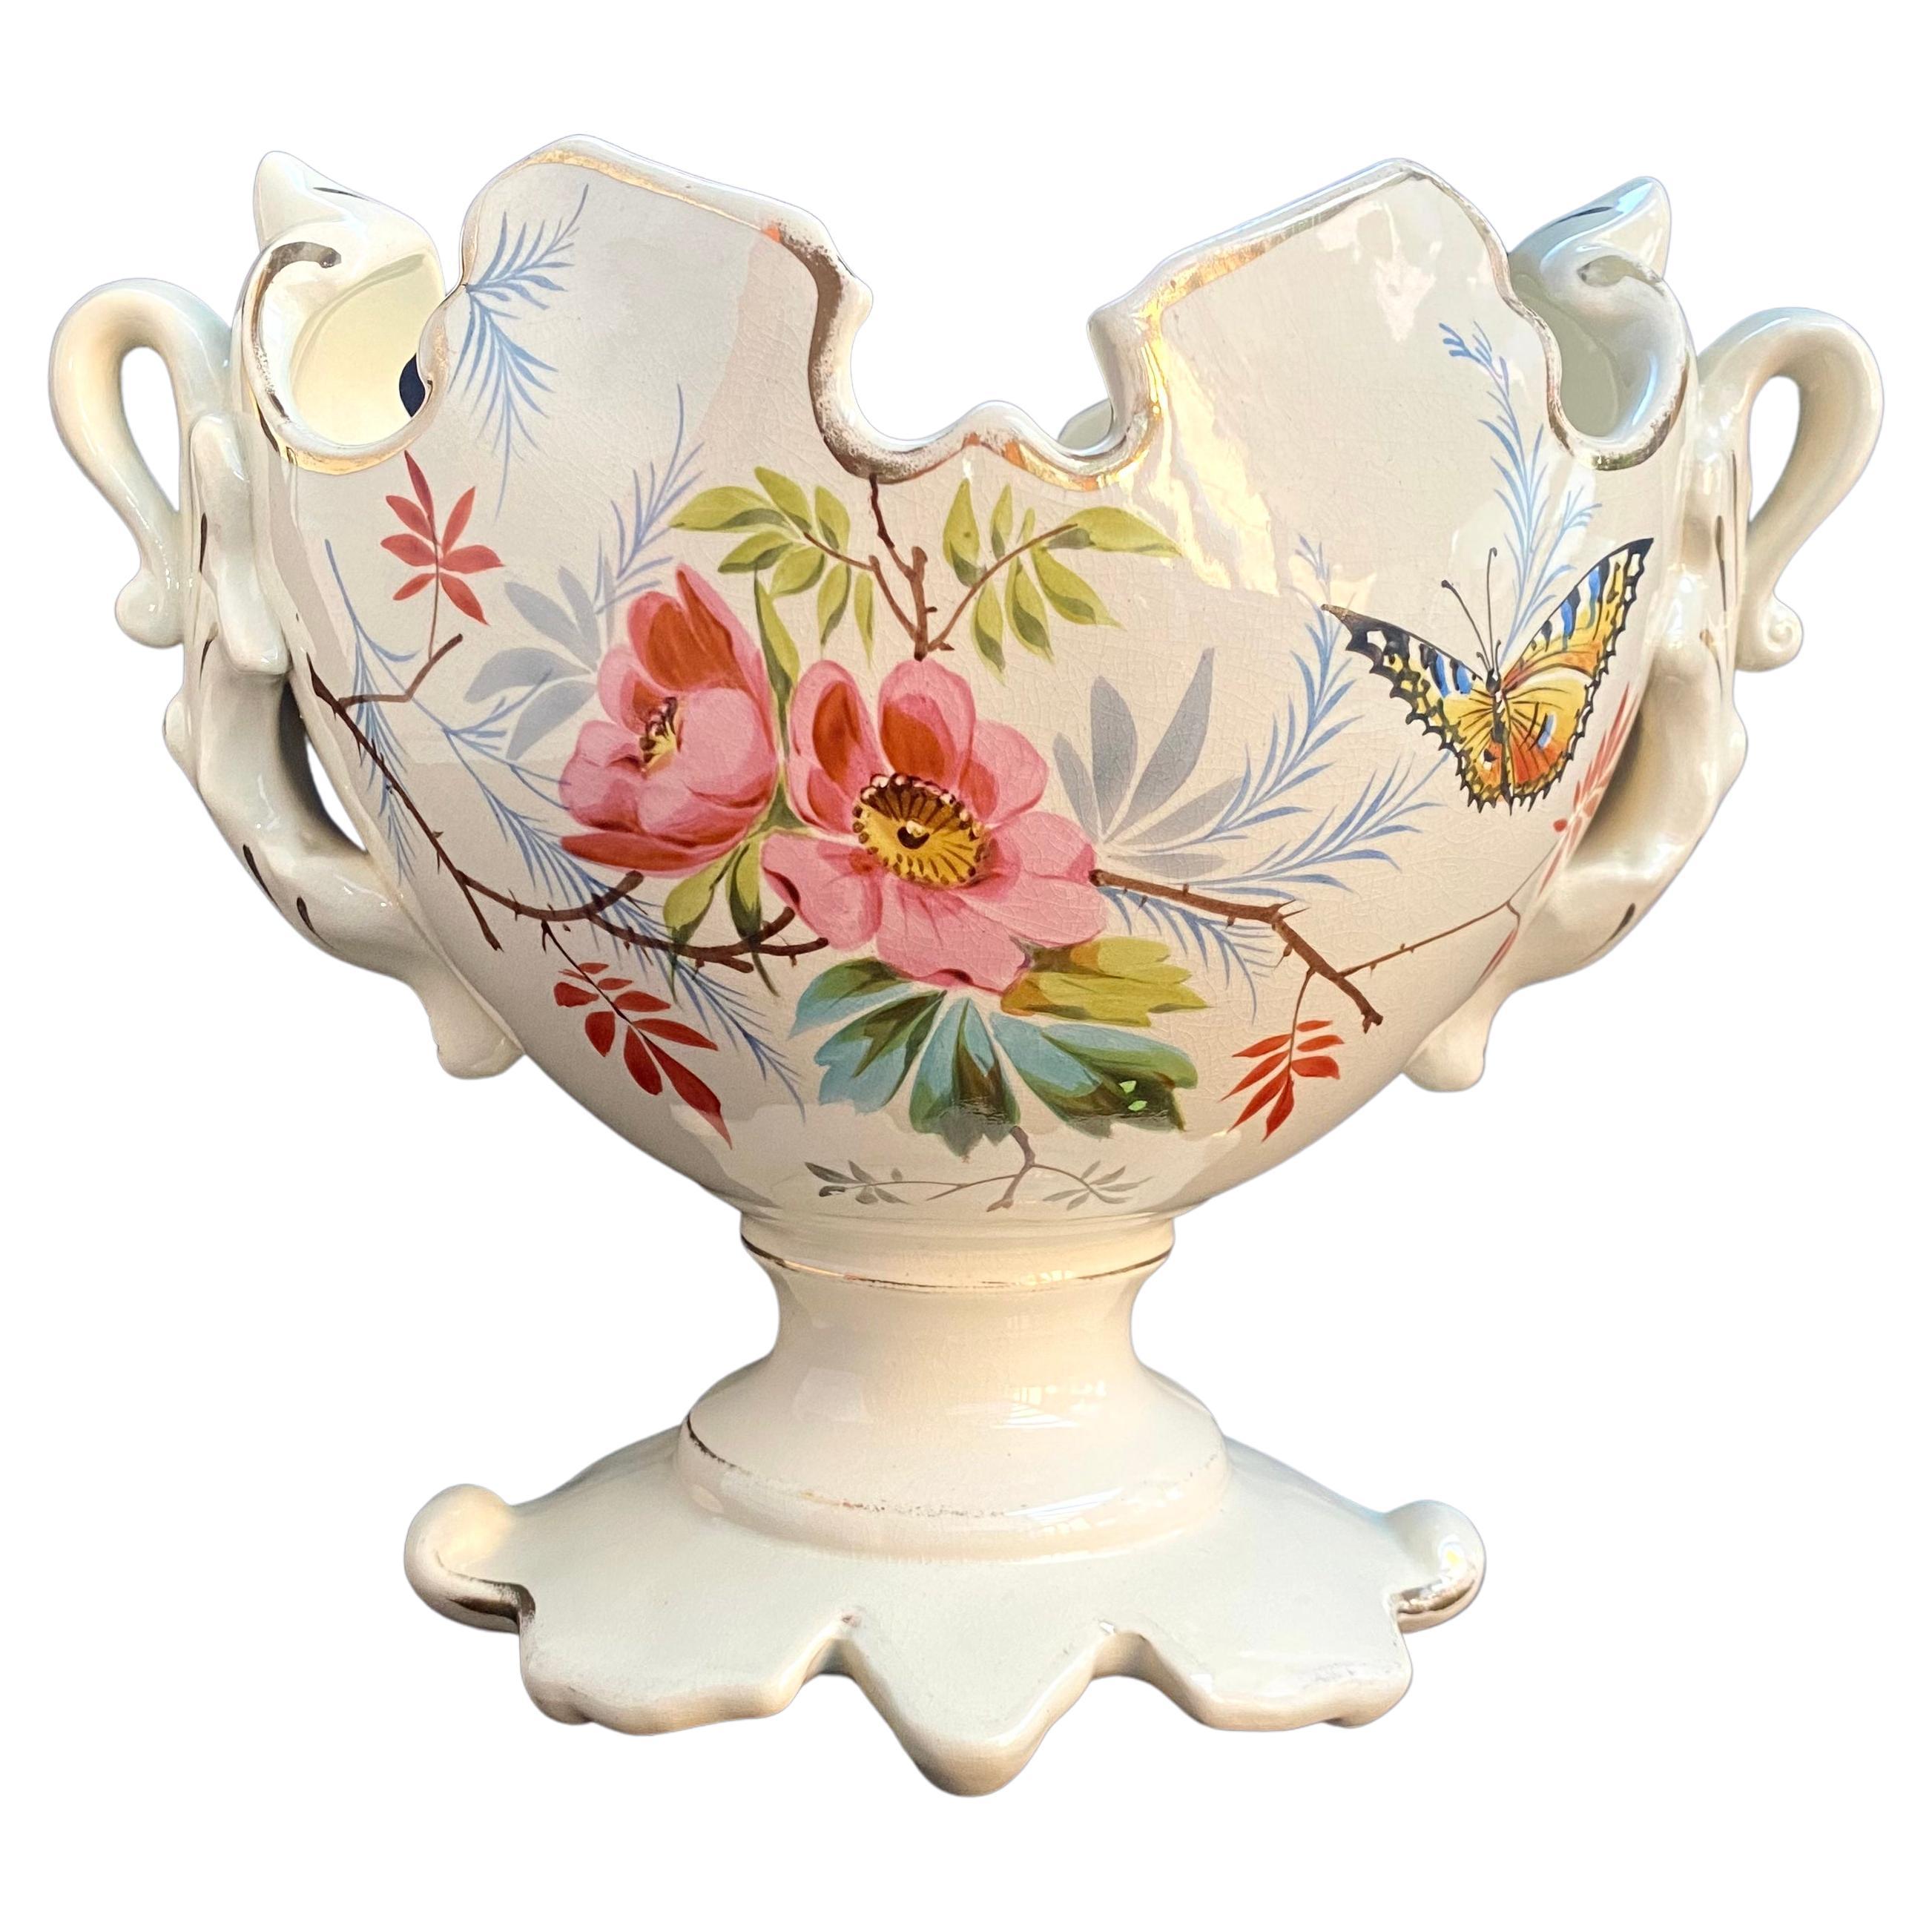 French Vintage Ceramic Planter, 1950 Floral Pattern Porcelain Vase For Sale